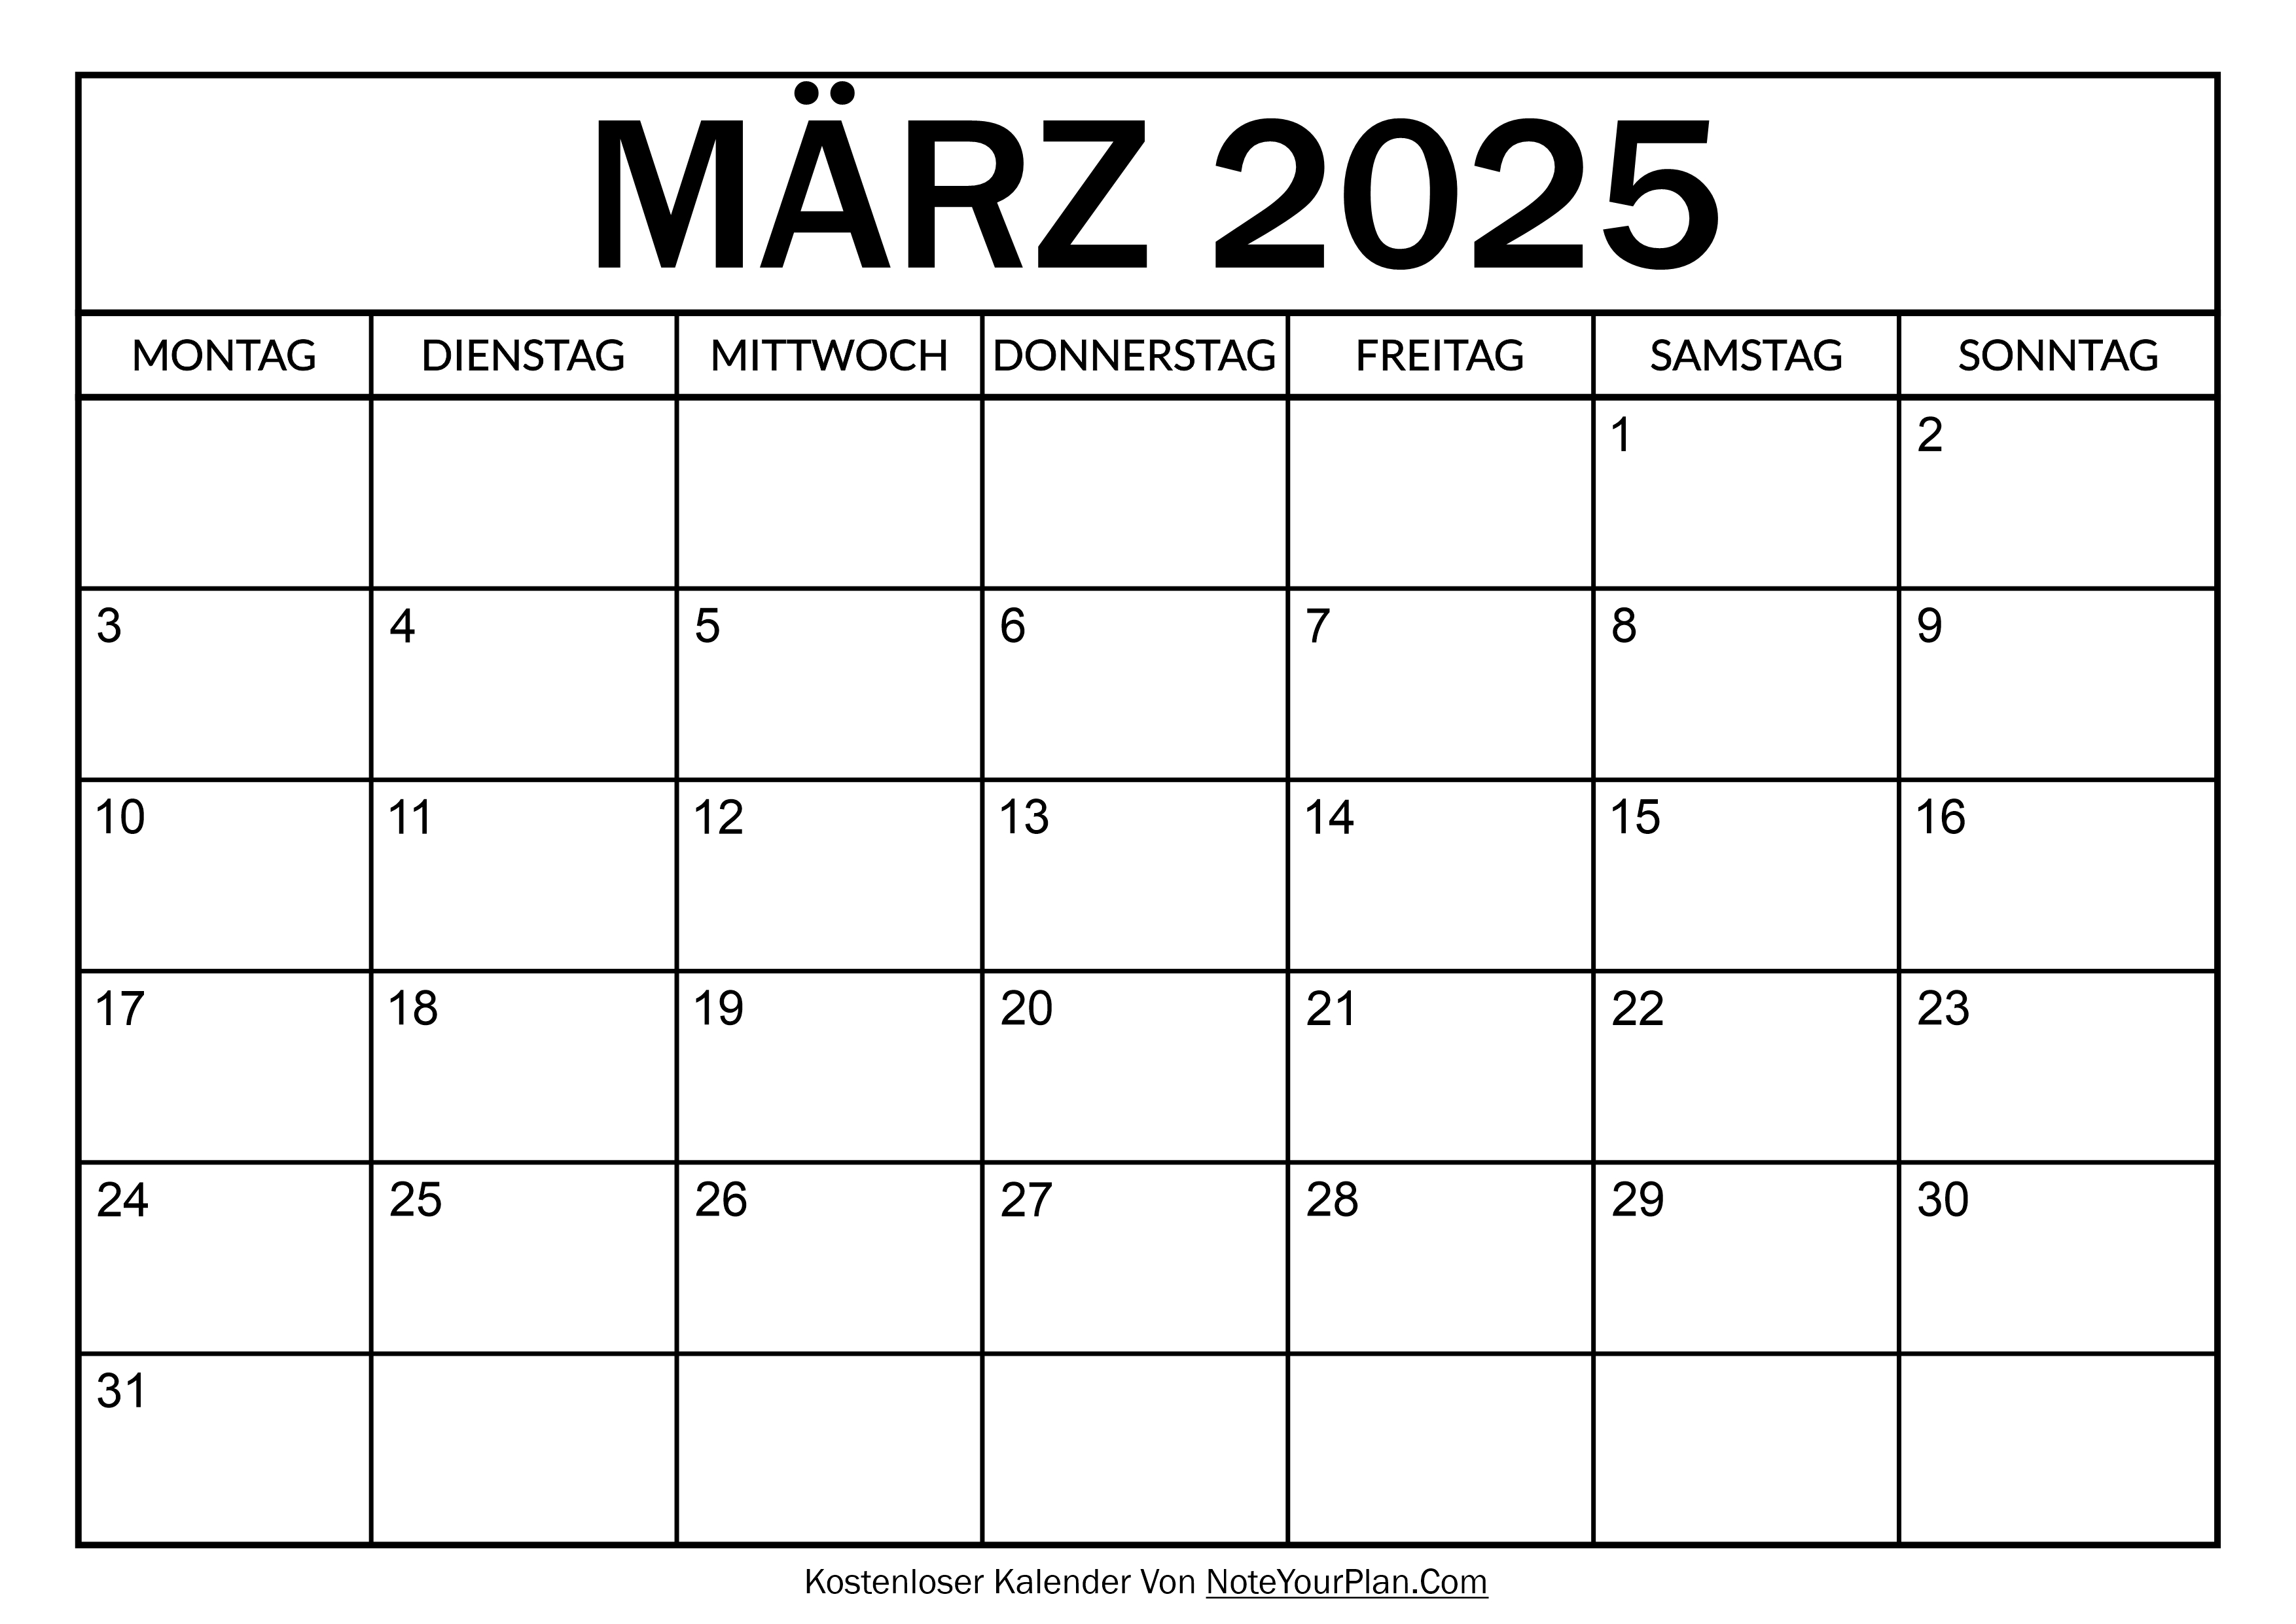 Kalender für März 2025